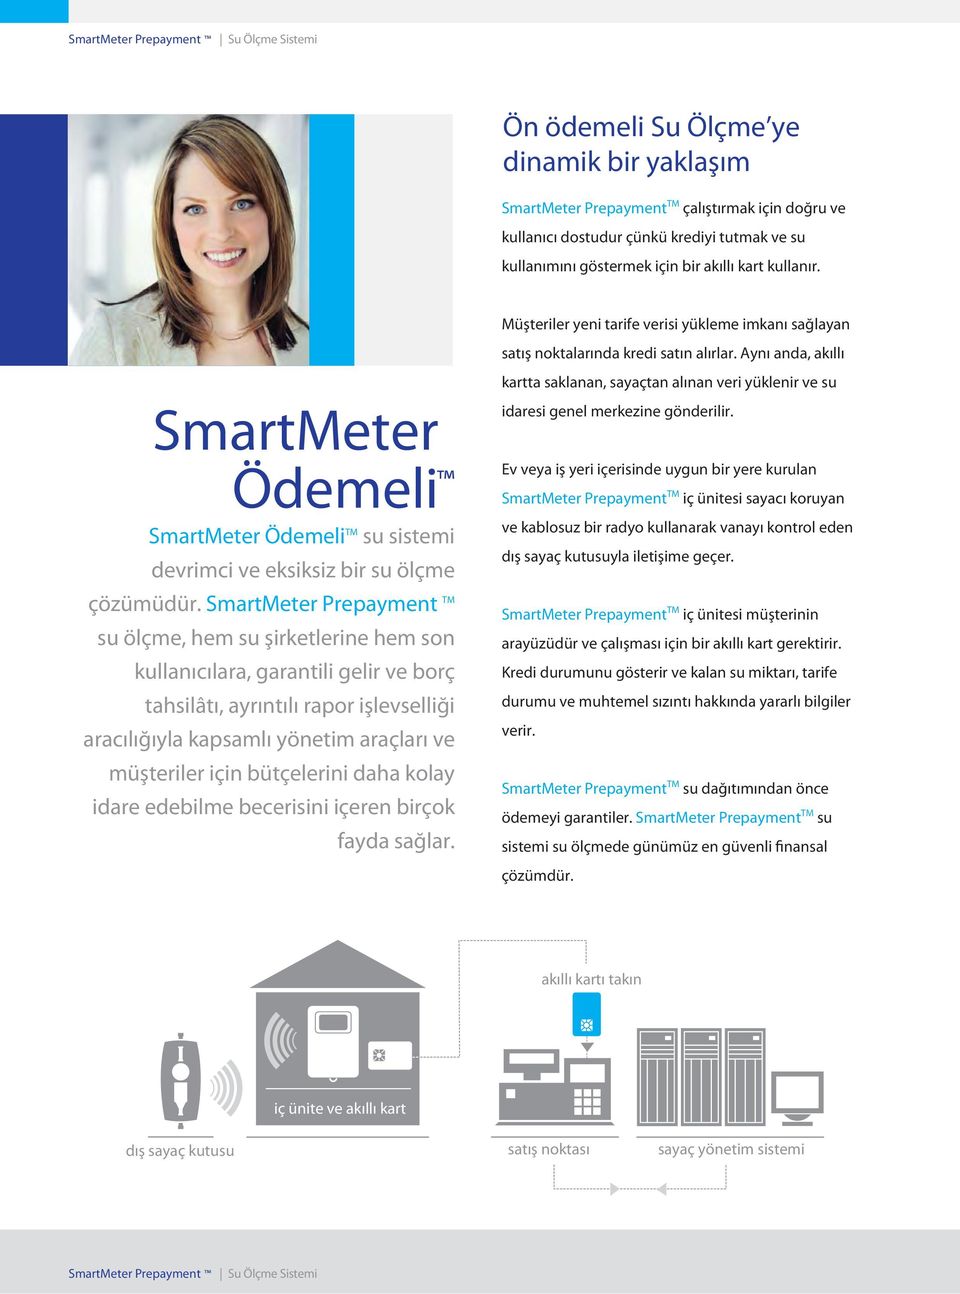 SmartMeter Prepayment TM su ölçme, hem su şirketlerine hem son kullanıcılara, garantili gelir ve borç tahsilâtı, ayrıntılı rapor işlevselliği aracılığıyla kapsamlı yönetim araçları ve müşteriler için